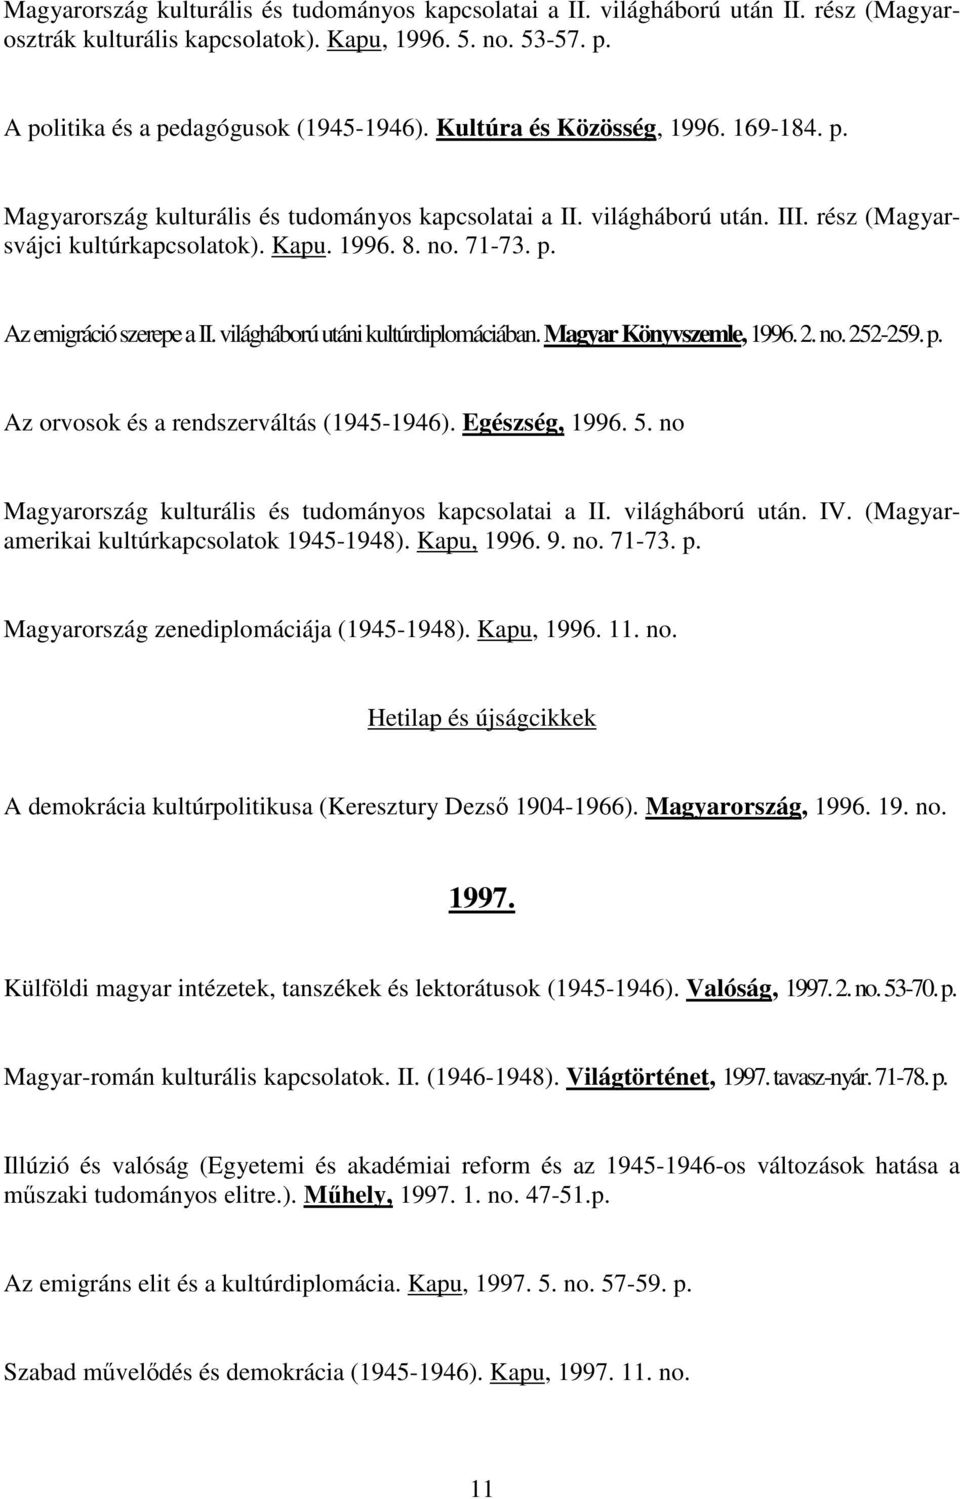 világháború utáni kultúrdiplomáciában. Magyar Könyvszemle, 1996. 2. no. 252-259. p. Az orvosok és a rendszerváltás (1945-1946). Egészség, 1996. 5.